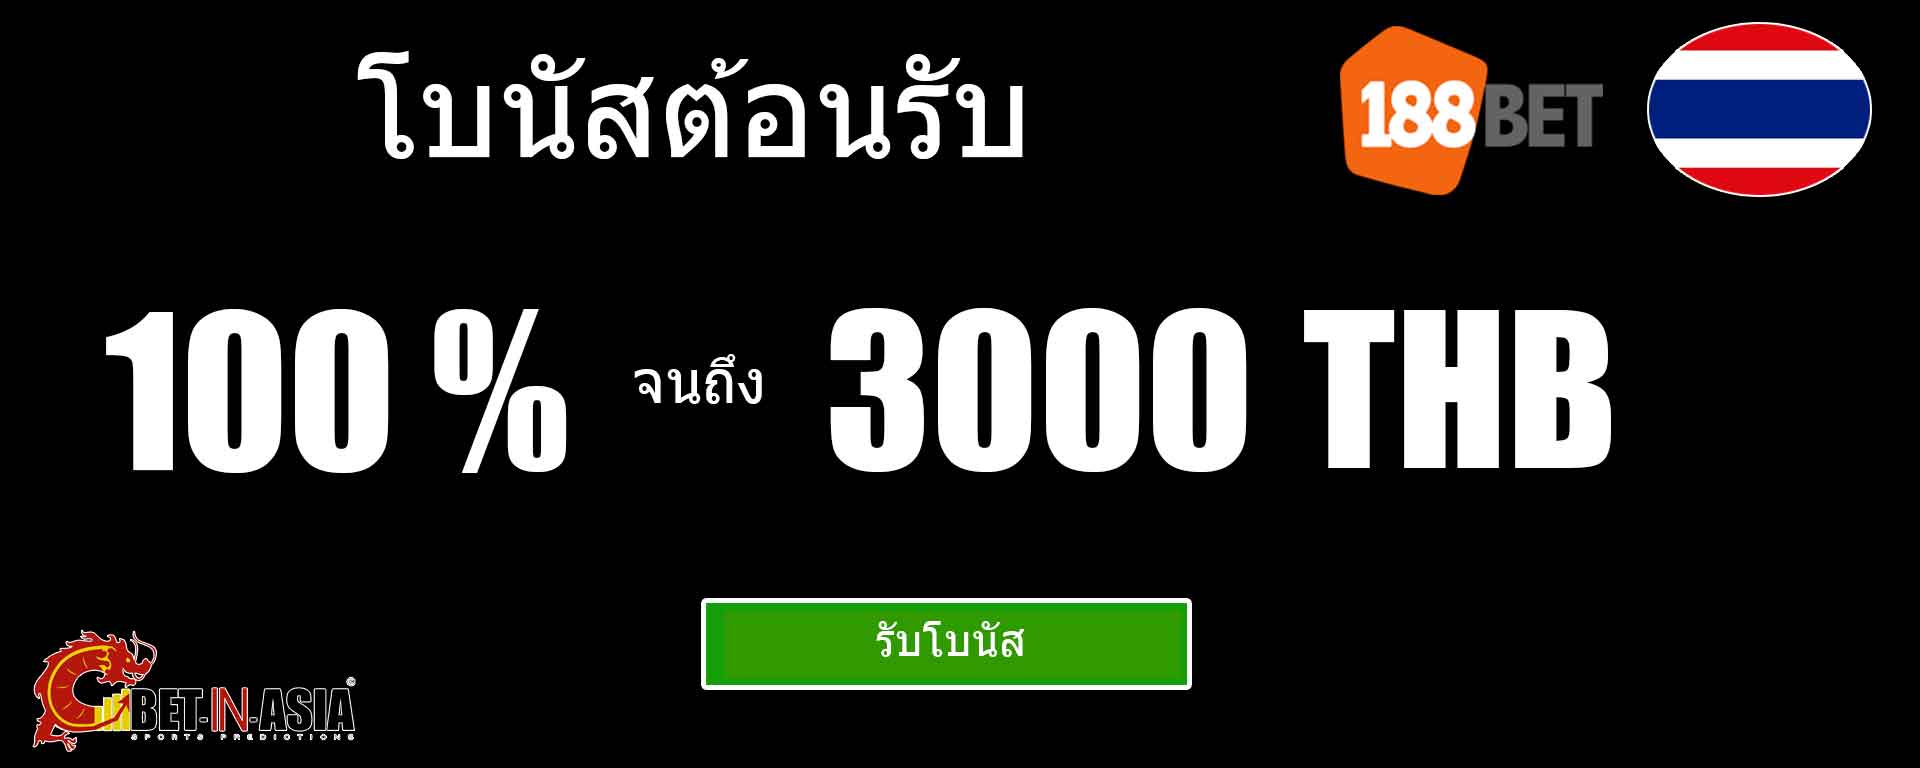 188bet ประเทศไทย โบนัสต้อนรับ 100 เปอร์เซ็นต์สำหรับการฝากครั้งแรก